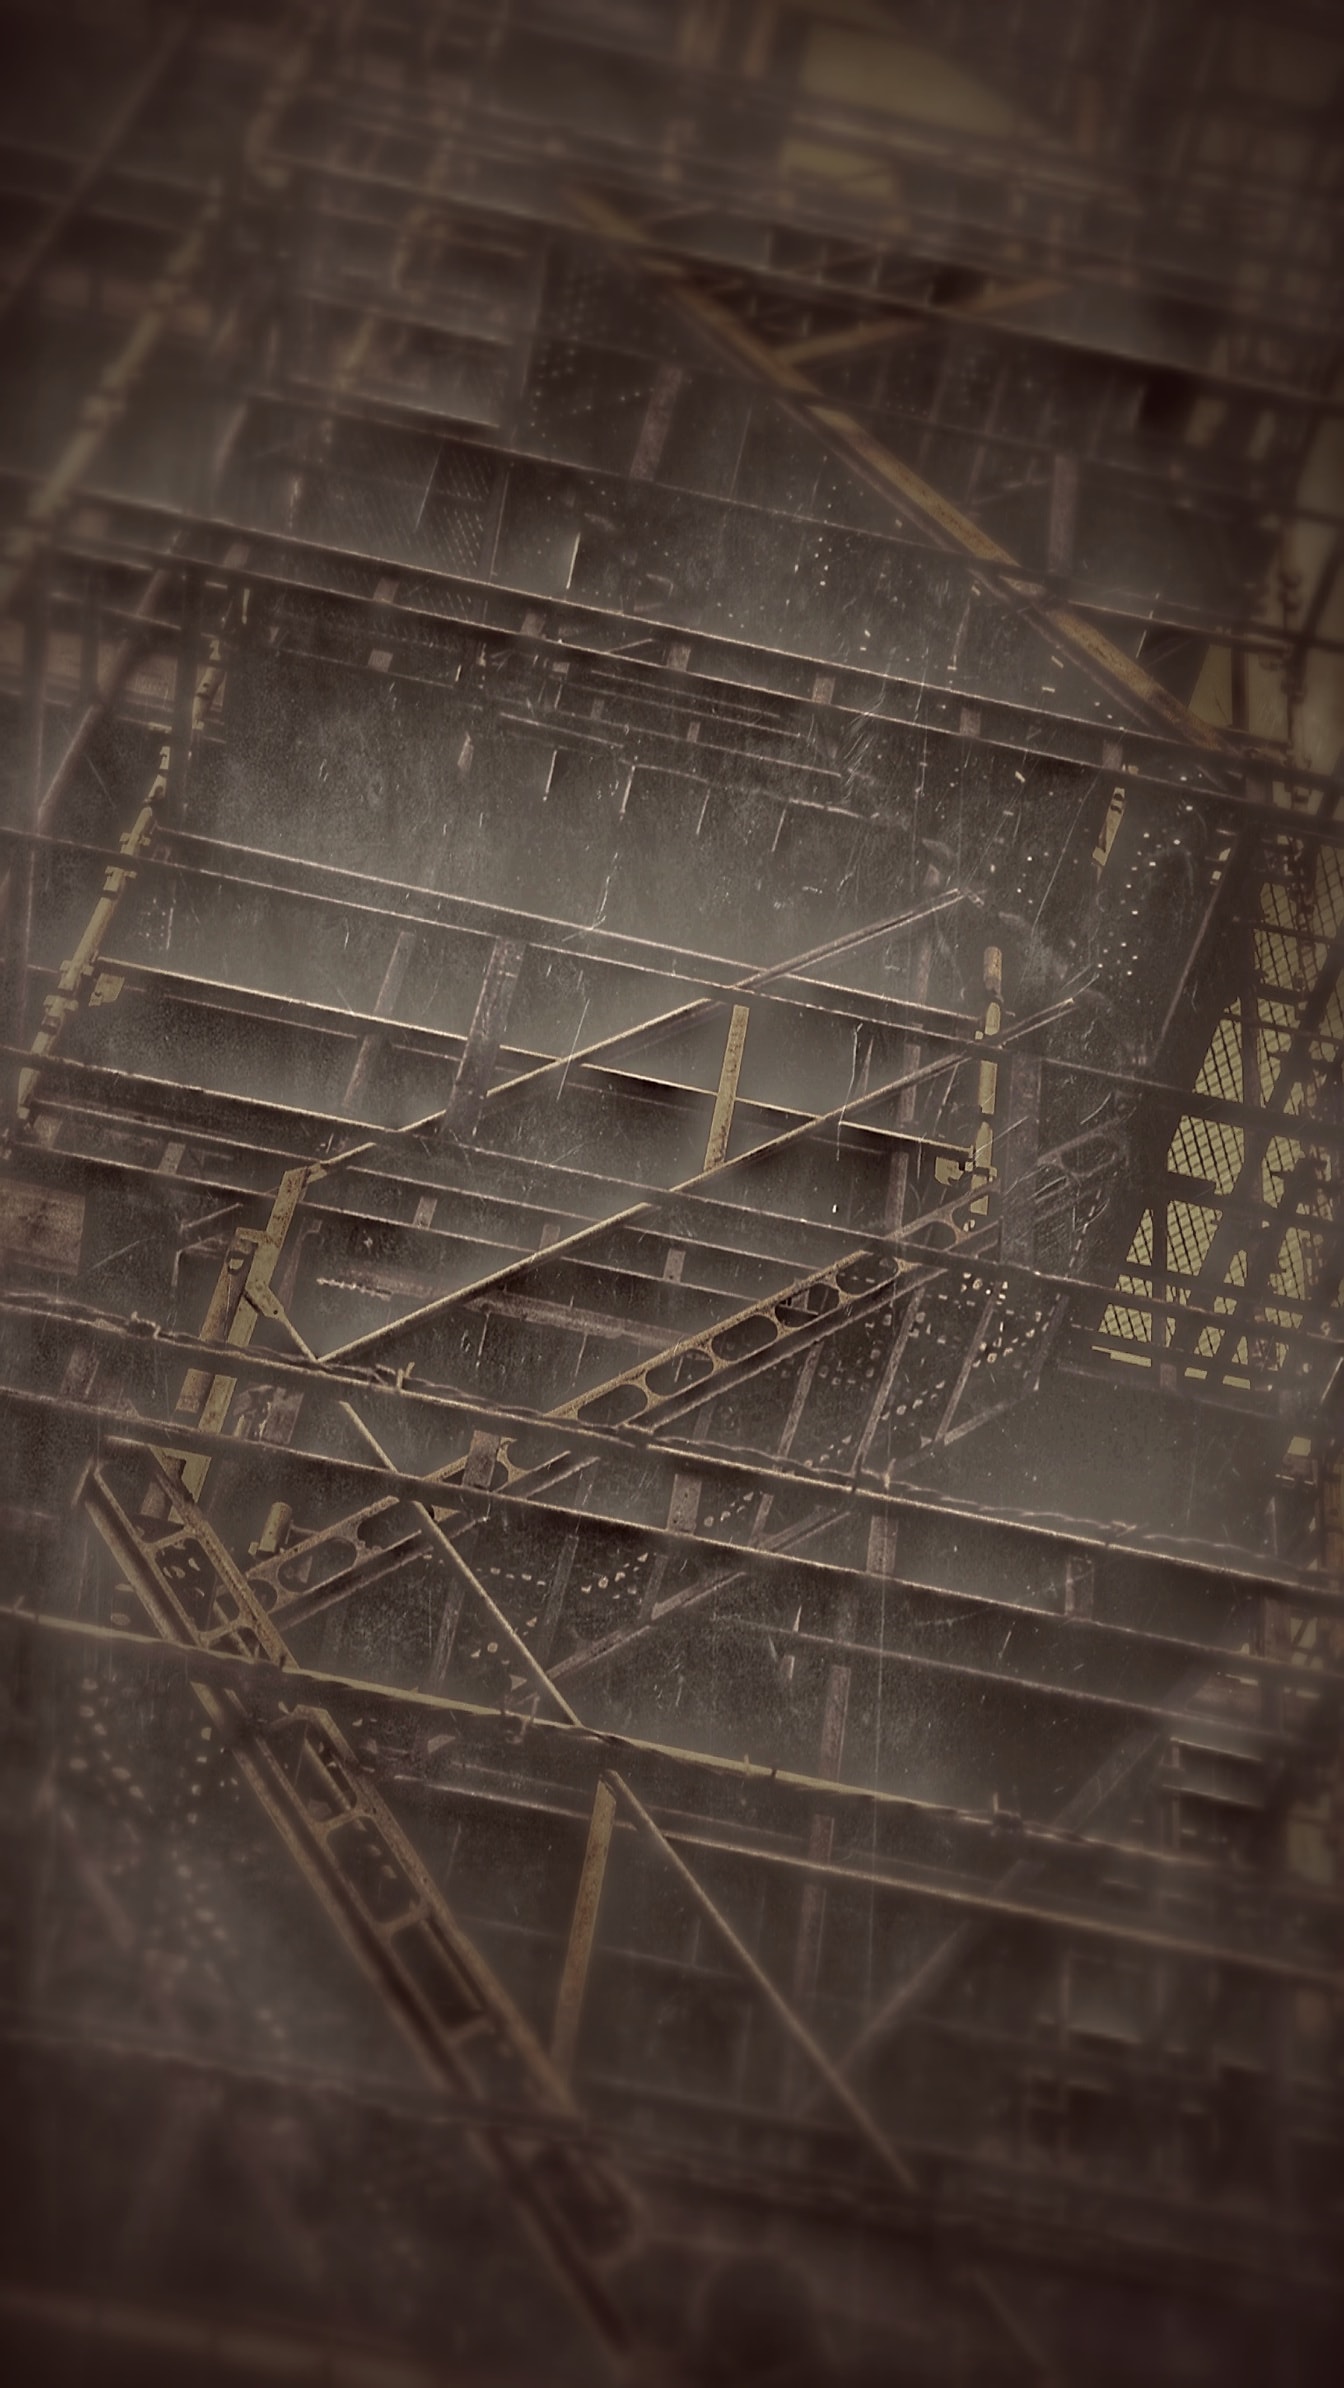 Inspiriran čeličnim stepenicama Alekseja Titarenka na građevinskoj fotografiji sepije